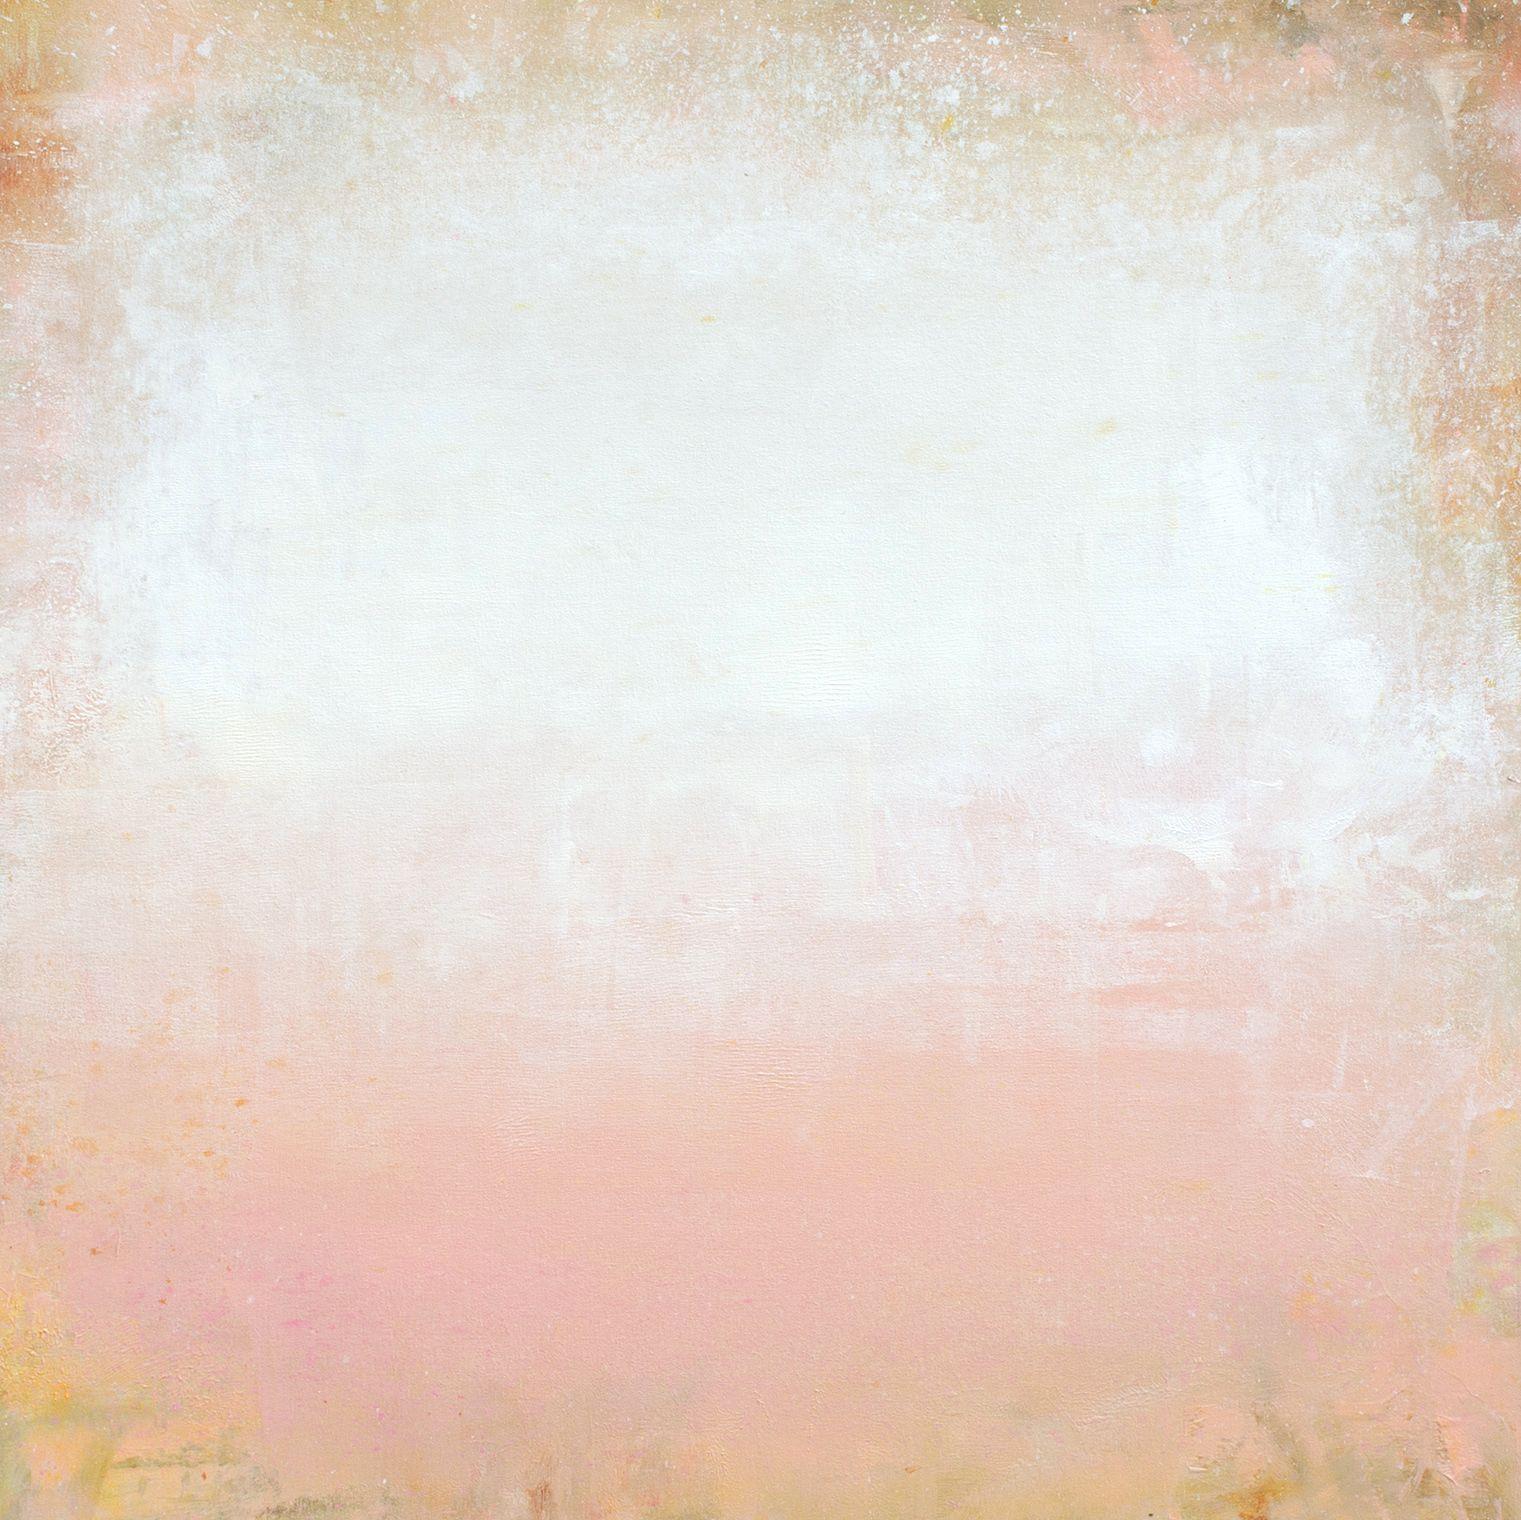 Peinture, acrylique sur toile rose blush 220602 - Painting de Don Bishop